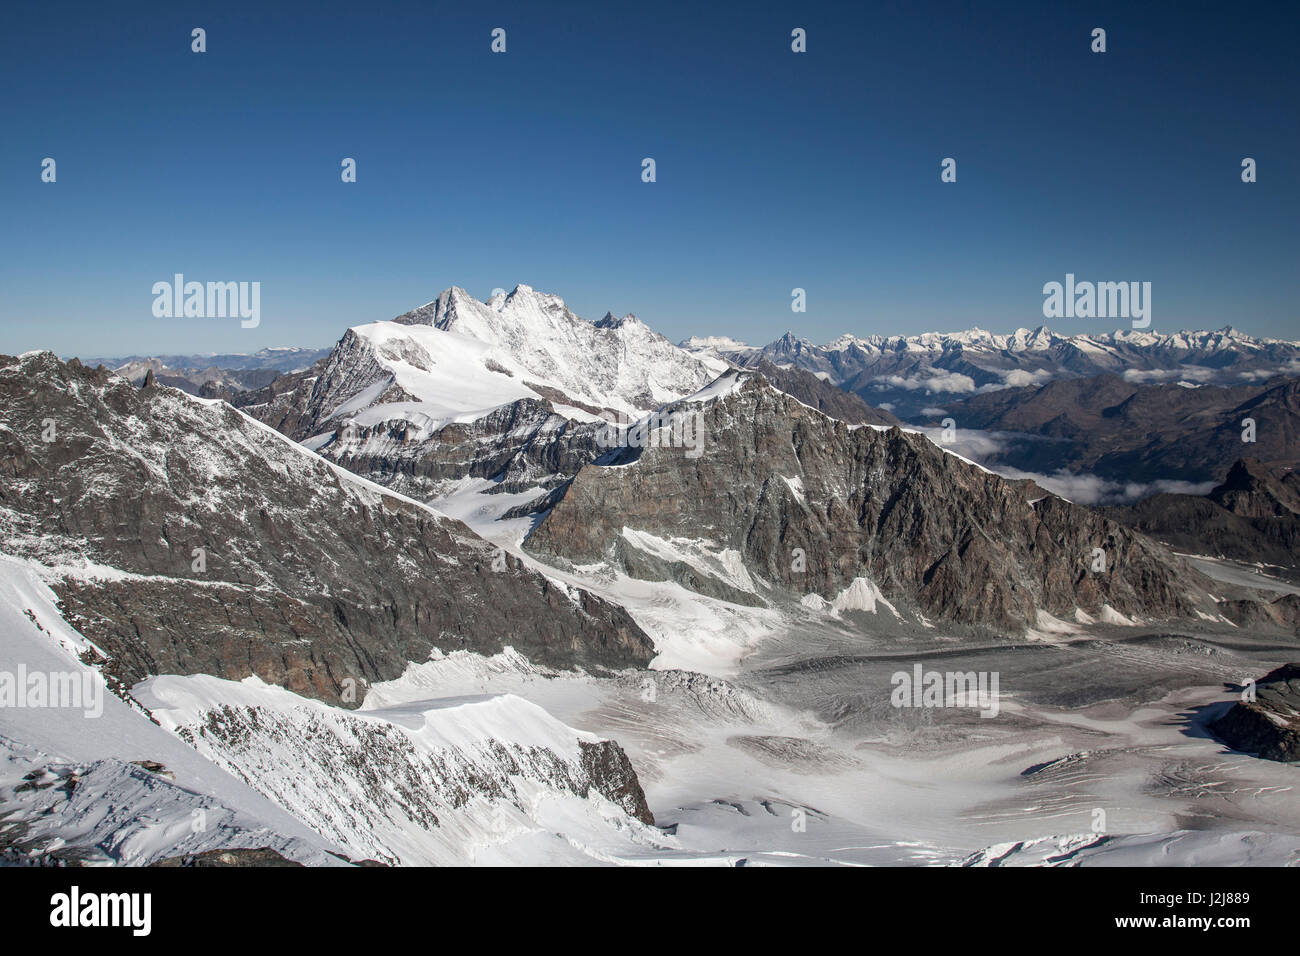 Snowy mountain landscape, view, Strahlhorn,  Switzerland, Saas Fee, Britanniahütte (alpine hut), mountain range, ice, snow, coldly Stock Photo